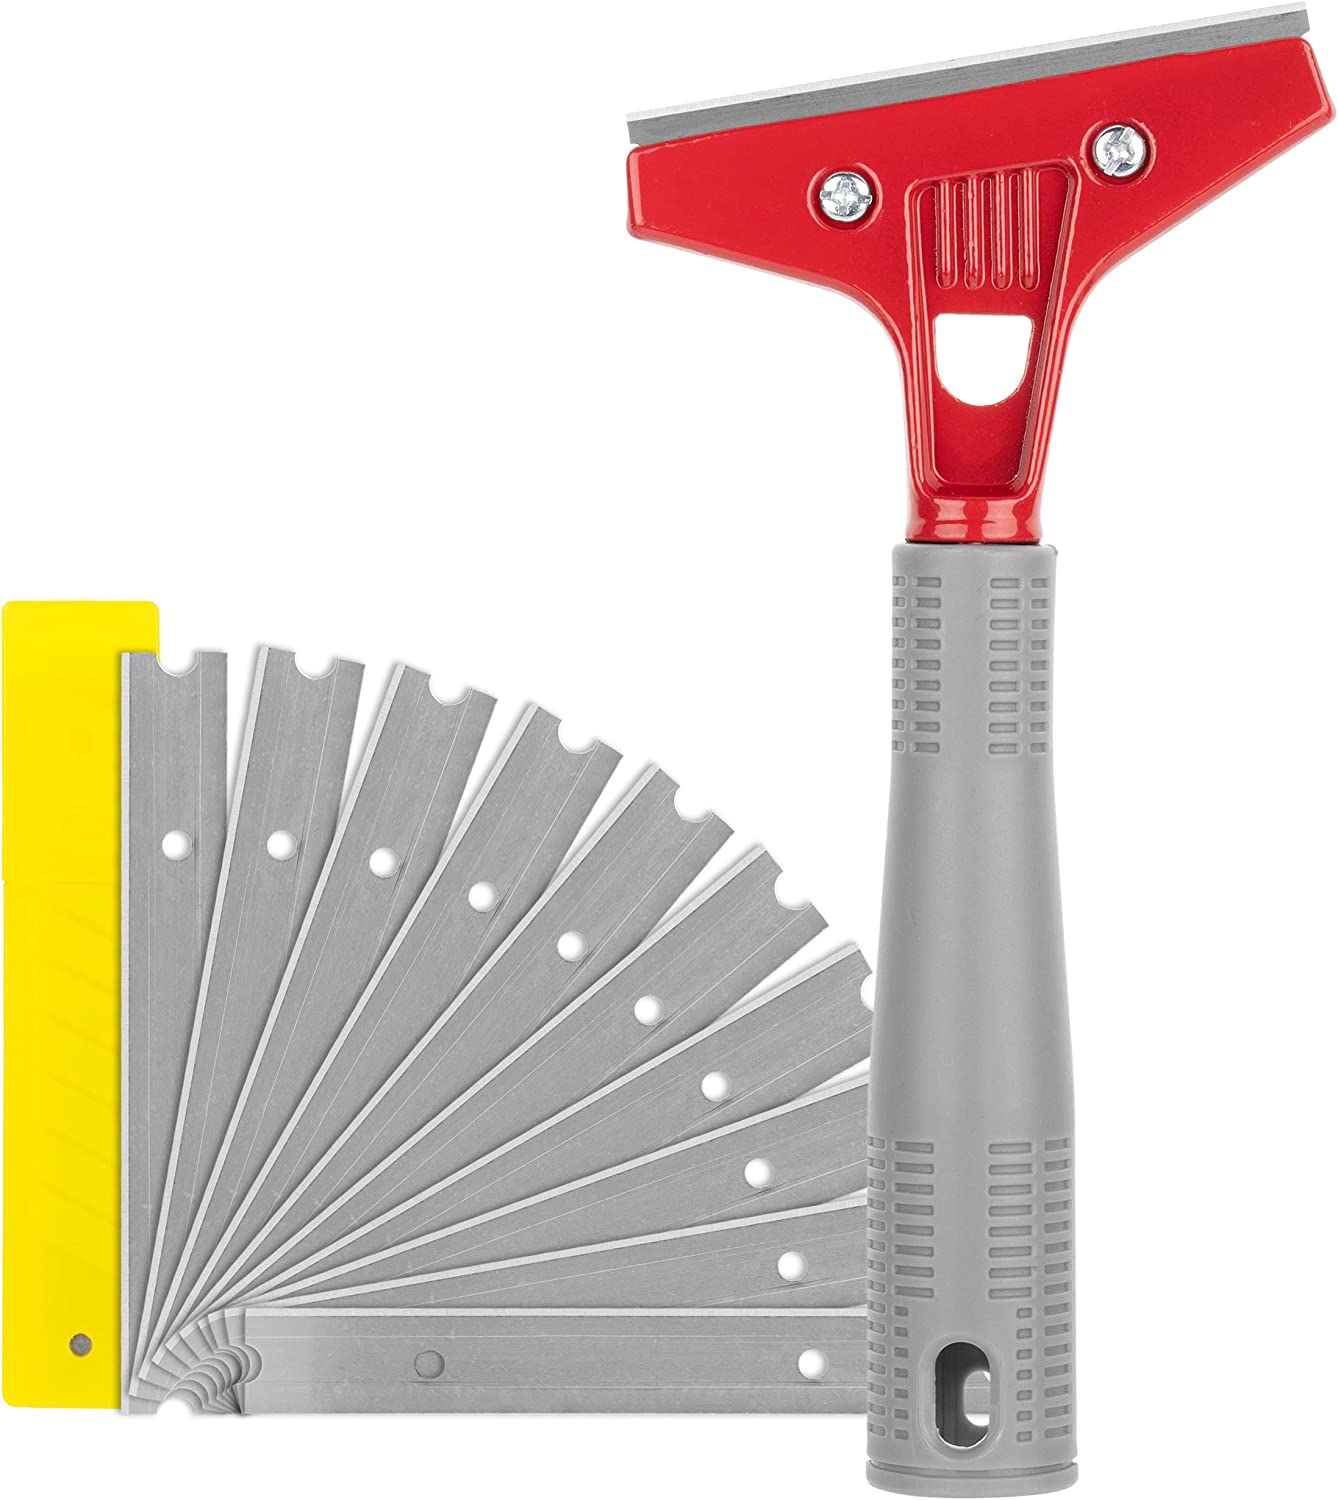 Razor Blade Scraper, 4 Scraper Tool with 10 Extra Scraper Blades, Paint  Scraper Tool, Floor Scraper, Razor Scraper - Bates Choice